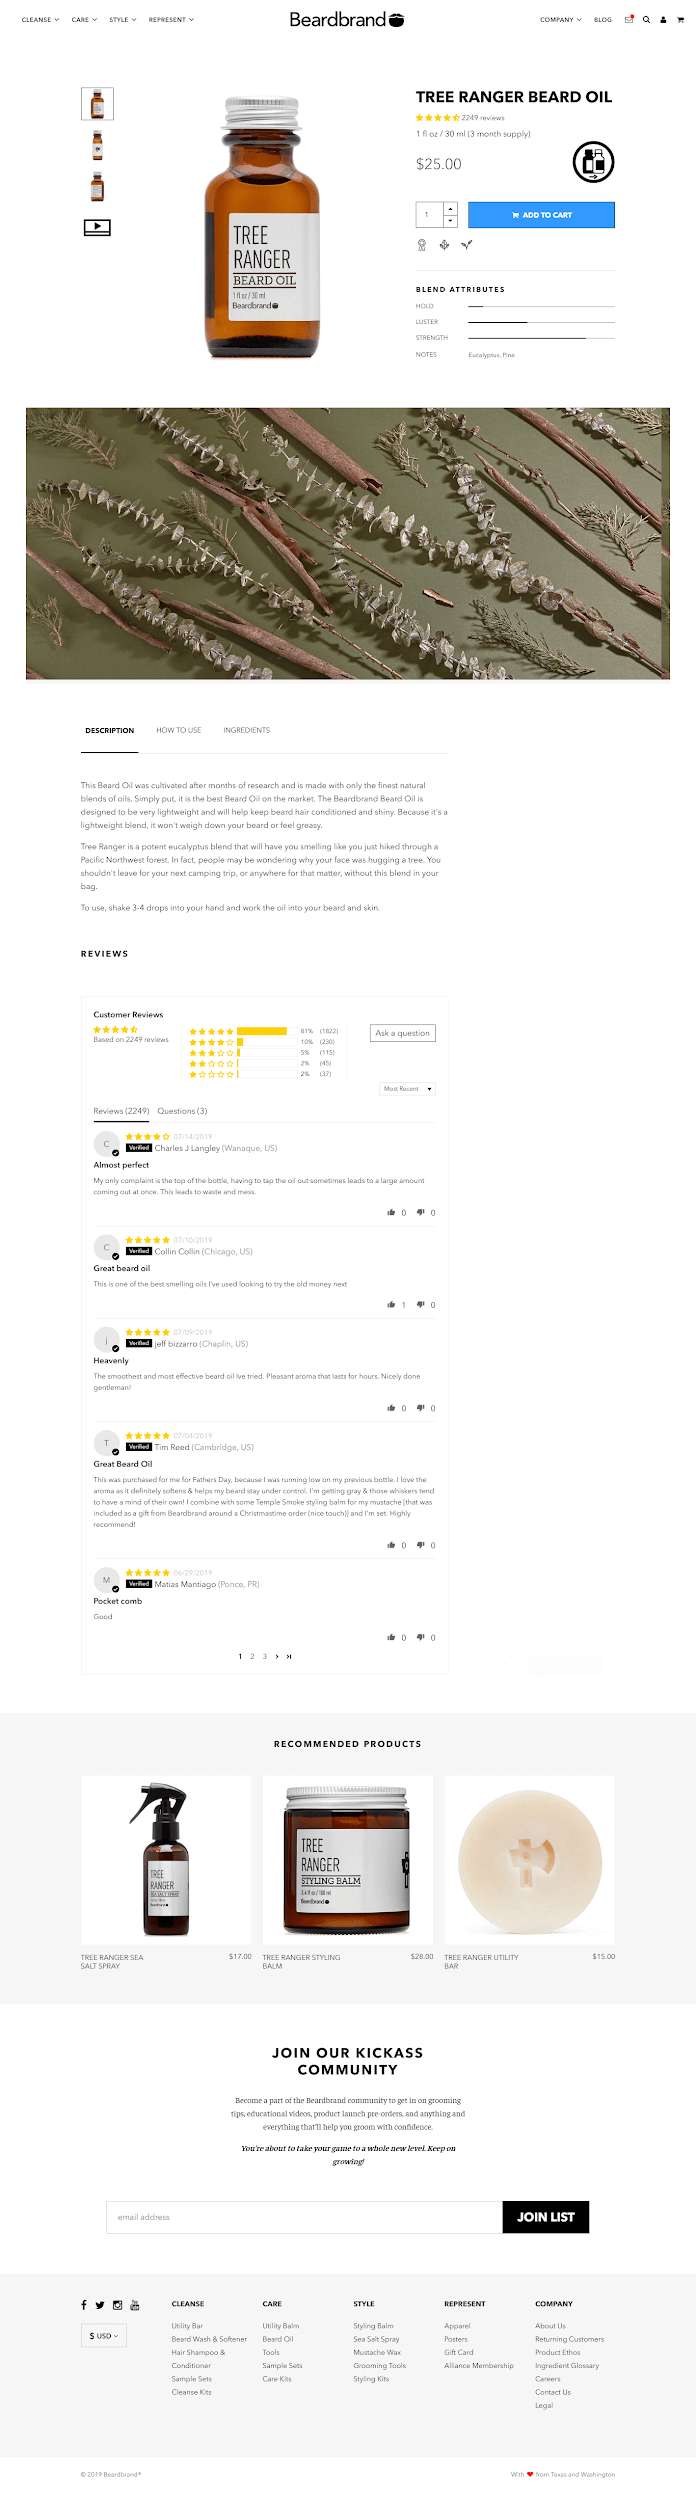 Beardbrand_Customer_Reviews